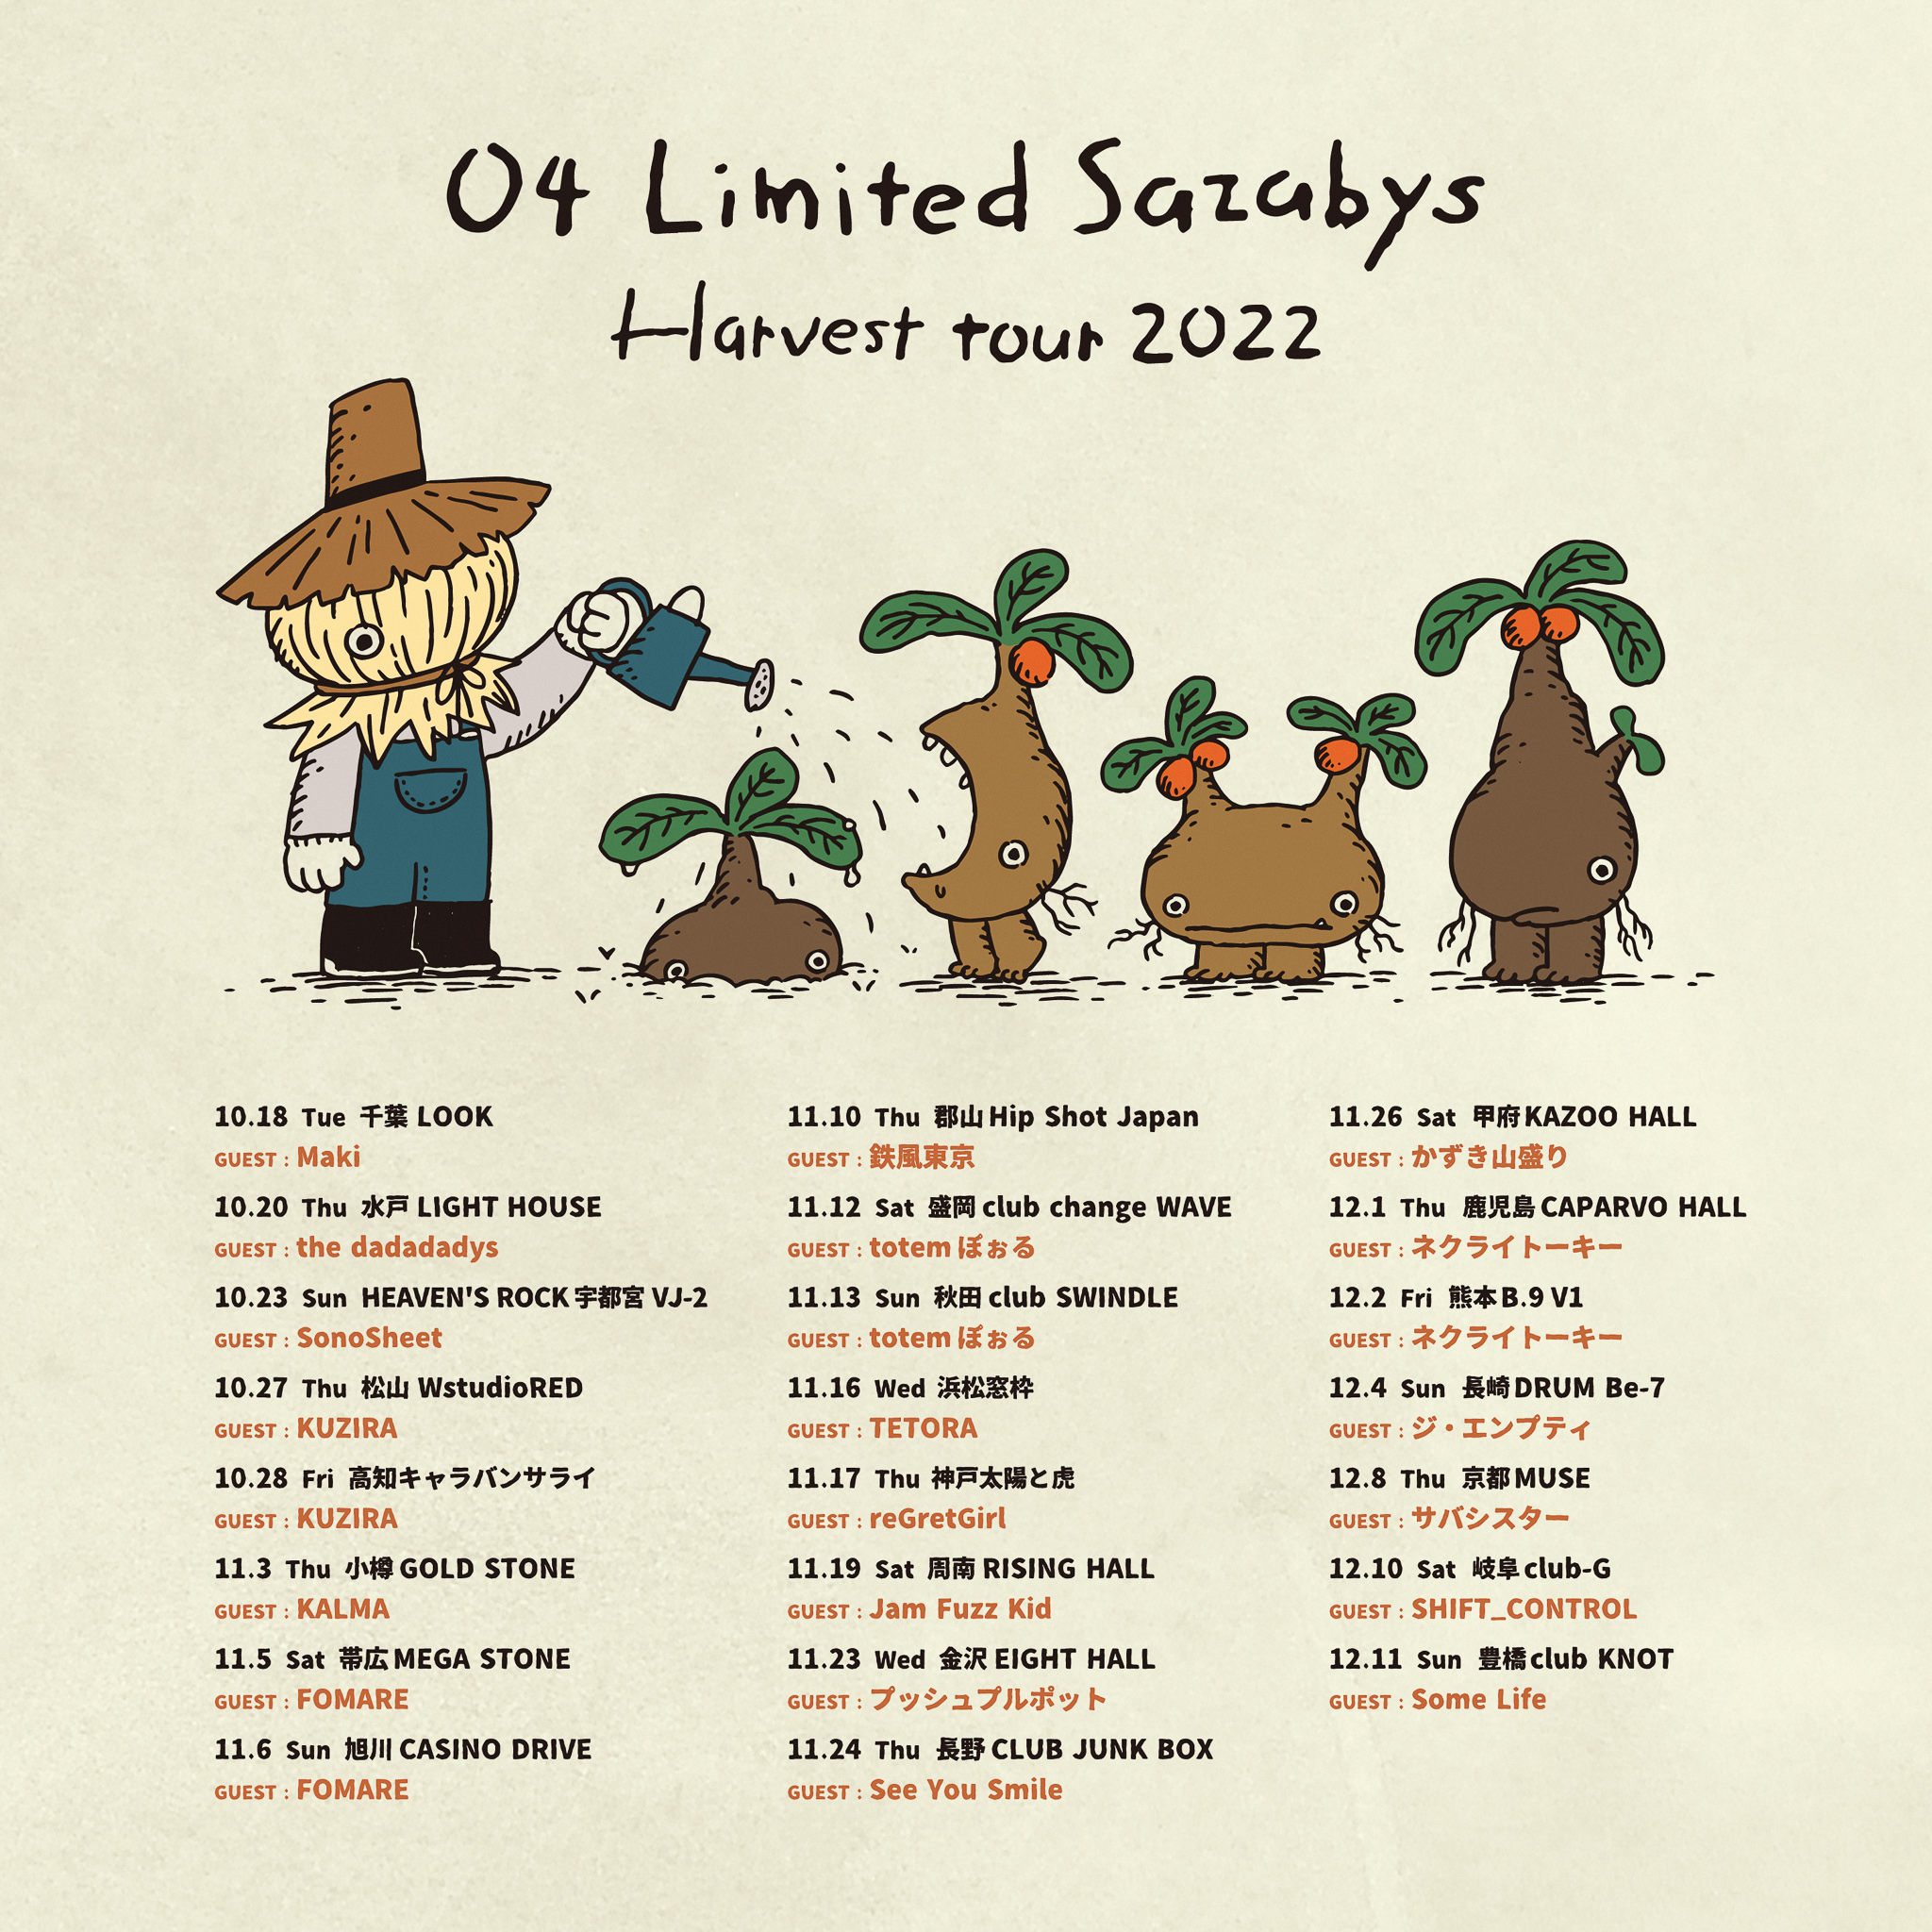 【岩手】04 Limited Sazabys "Harvest tour 2022" (盛岡club change WAVE )